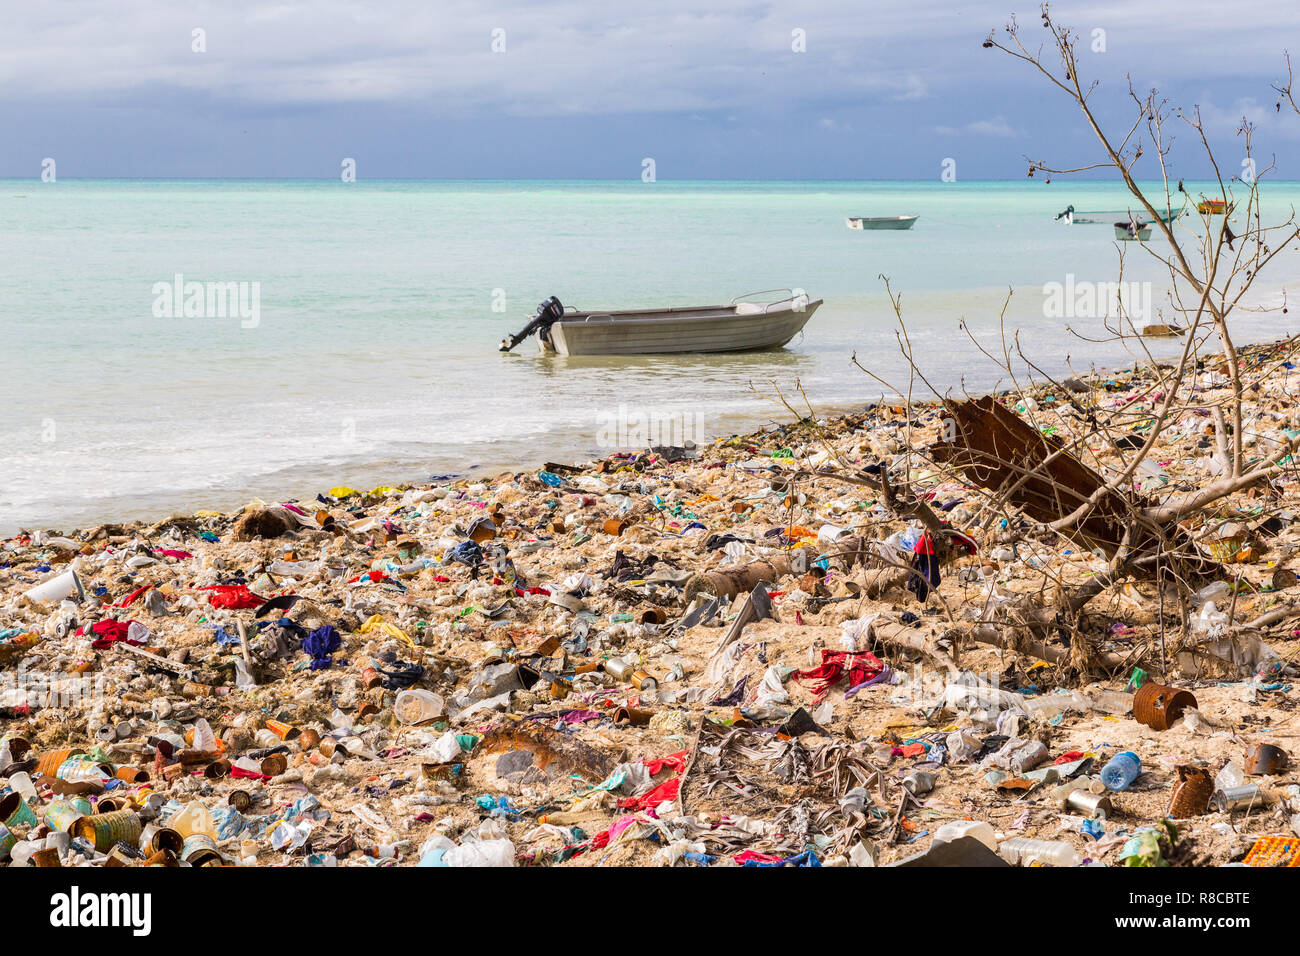 Dépotoir, d'enfouissement, l'atoll micronésien plage de sable fin, Sud de Tarawa, Kiribati, l'Océanie. Problèmes de gestion des ordures et écologique des nations insulaires. Banque D'Images